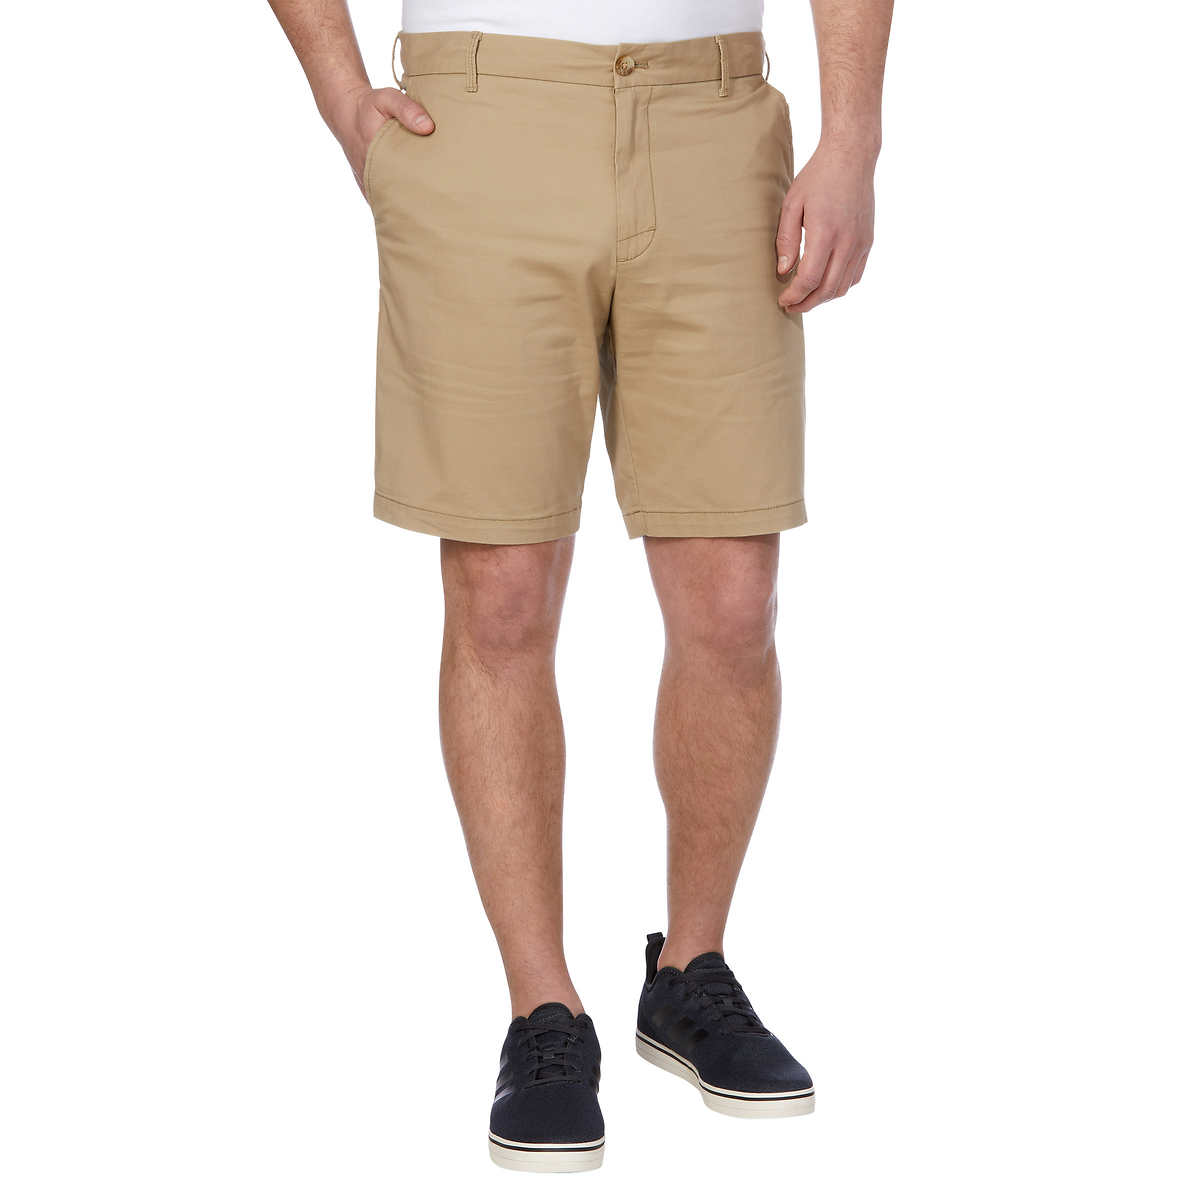 NWT IZOD Men's Flat Front Cargo Shorts Pants 100% Cotton 5 Colors Sz 32-42 $60 